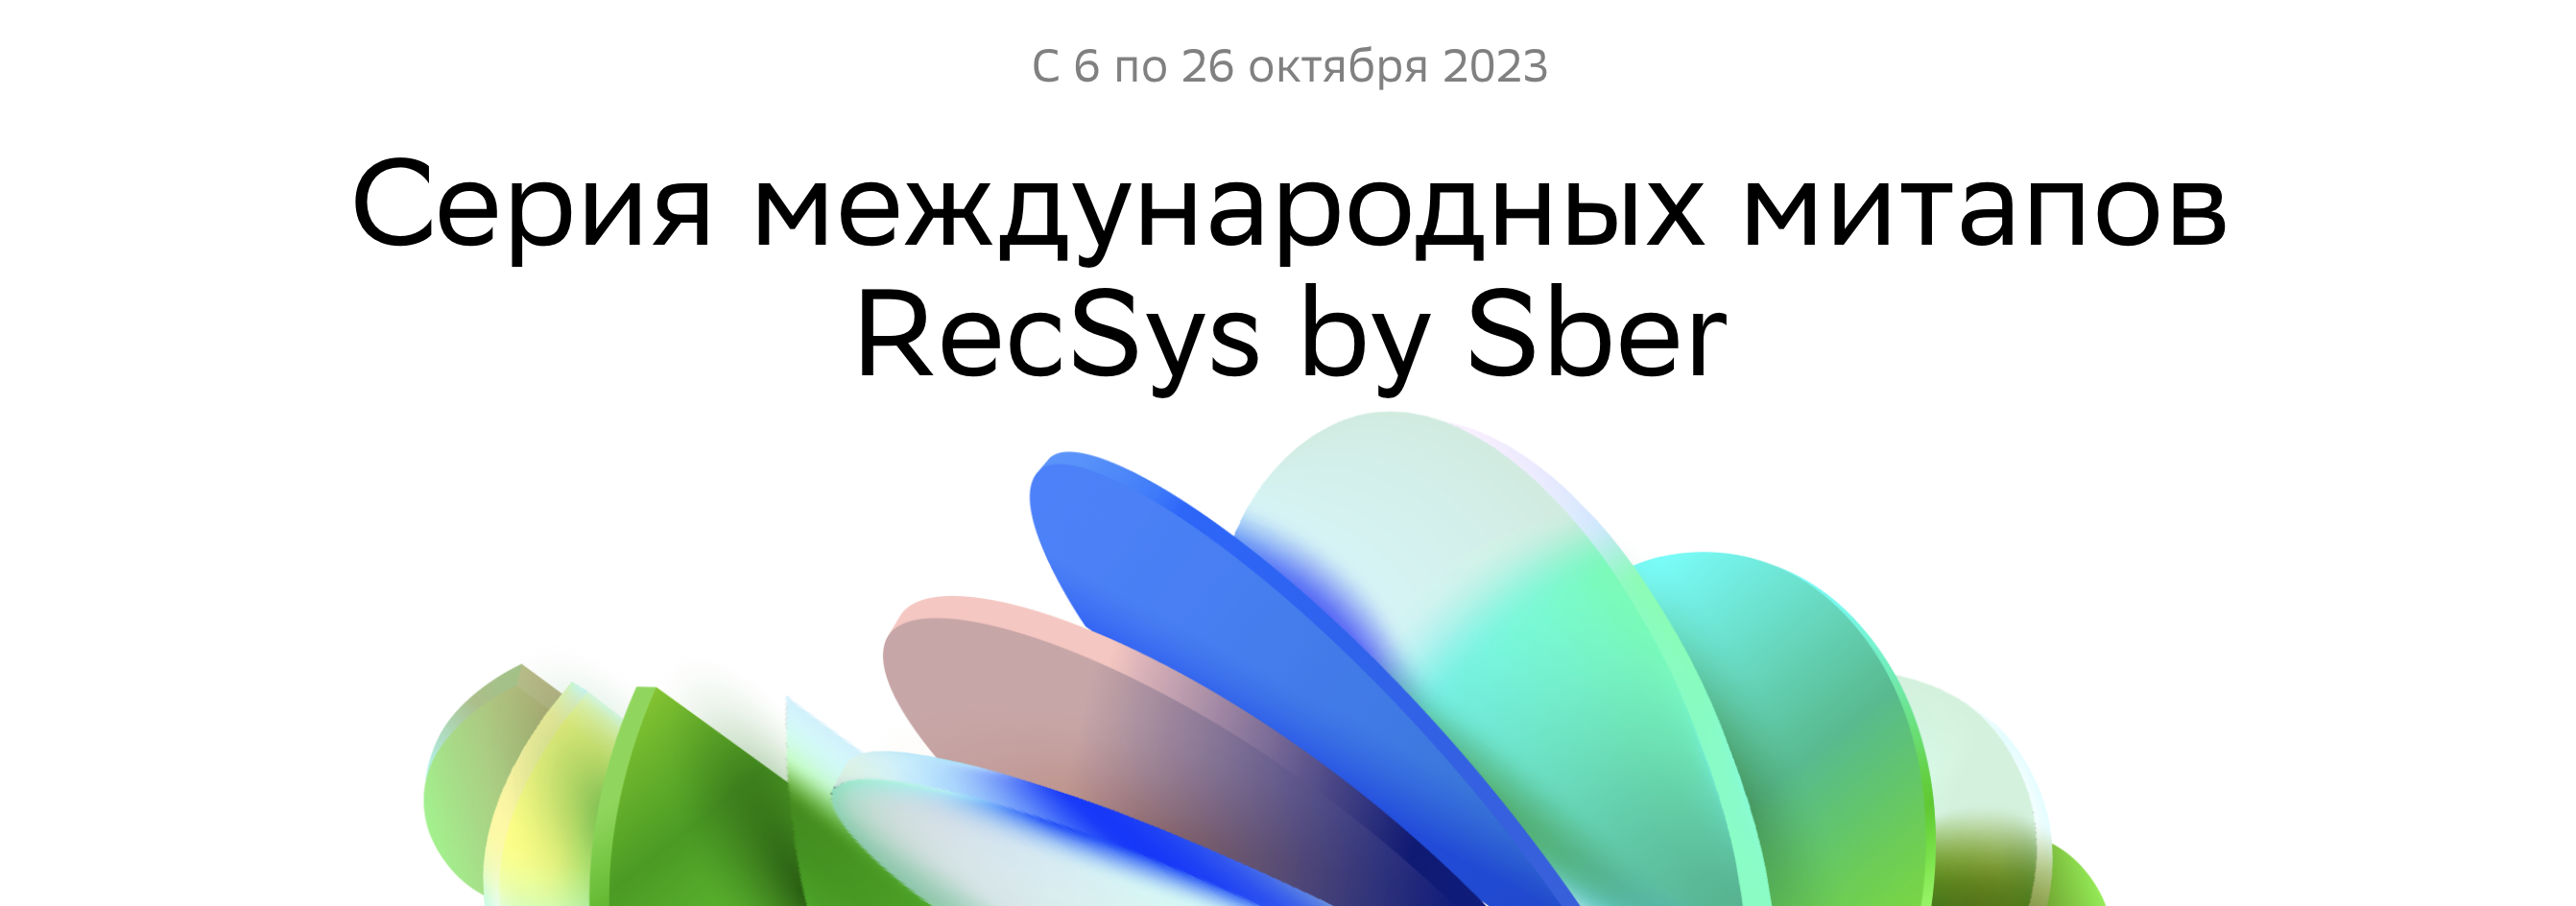 Обложка мероприятия RecSys by Sber в Минске